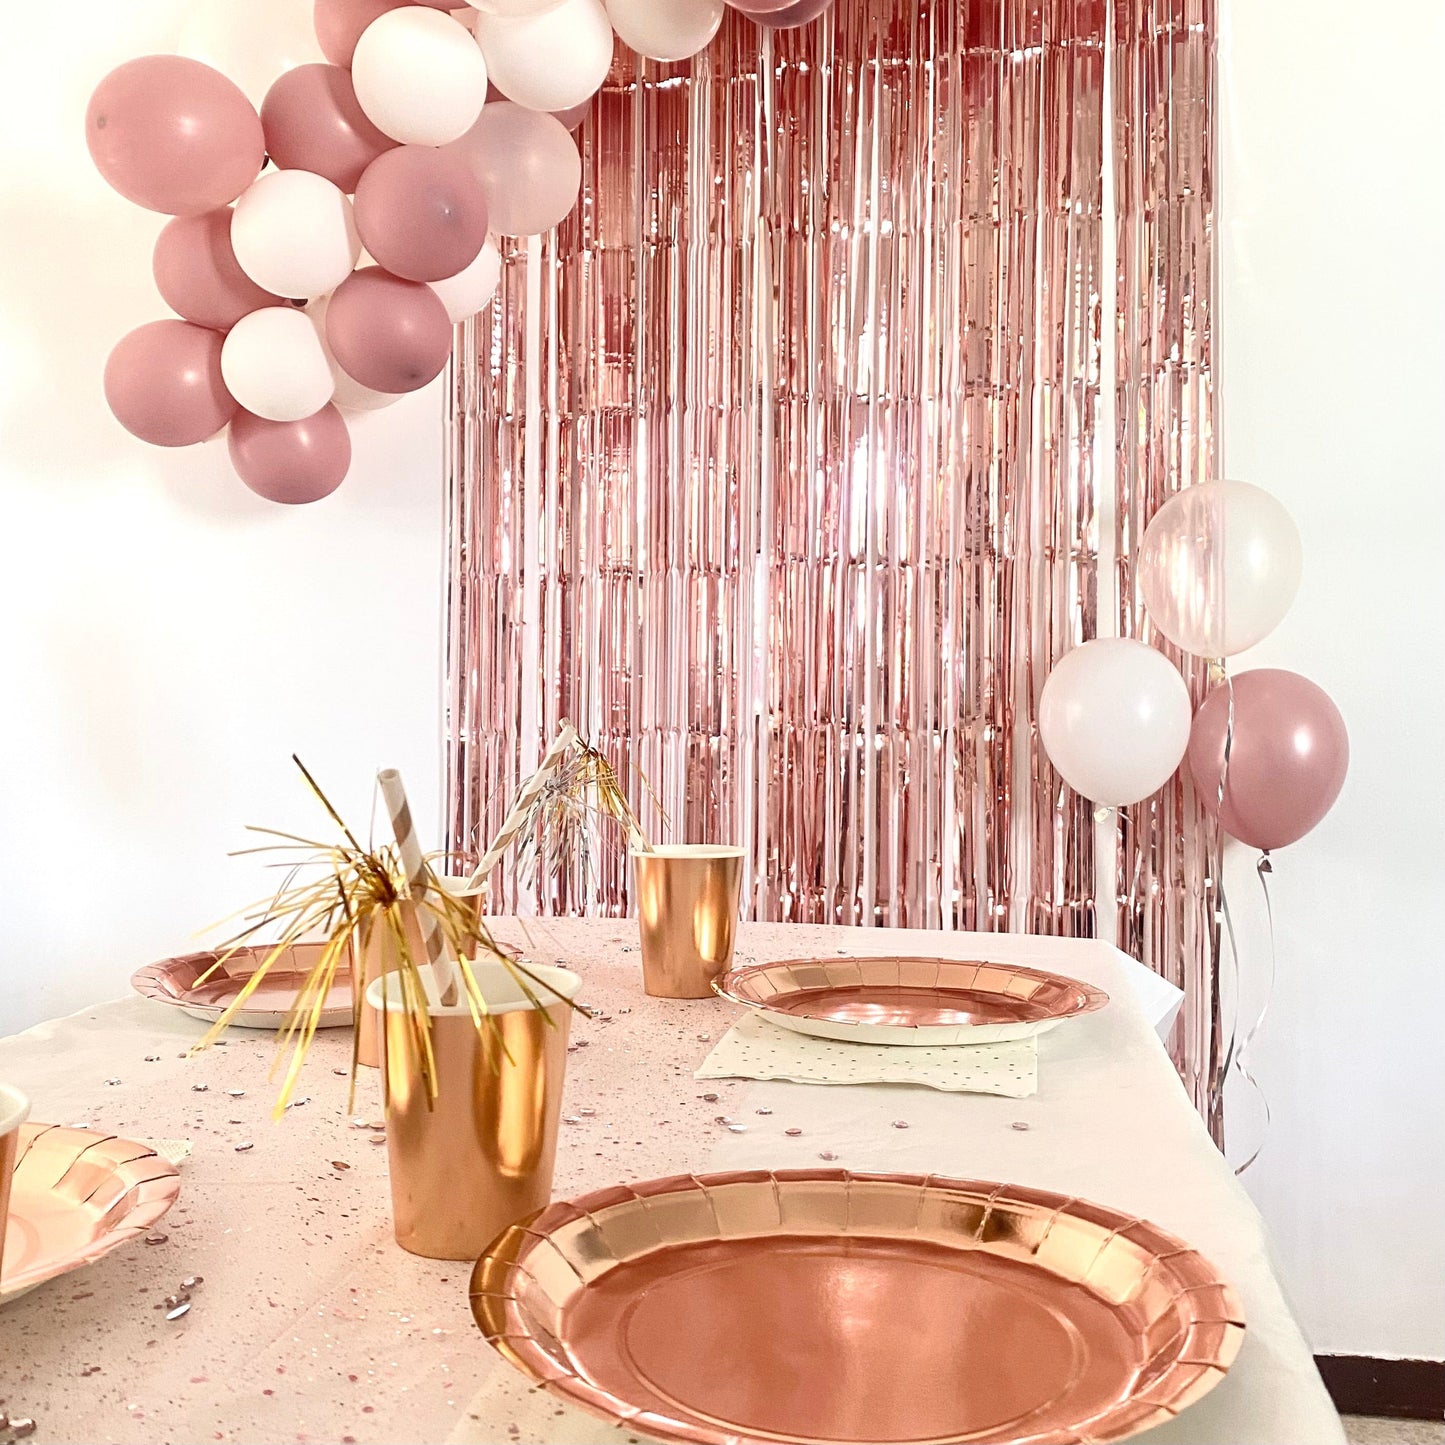 Box déco photocall thème rose gold pour anniversaire, evjf, jour de l'an